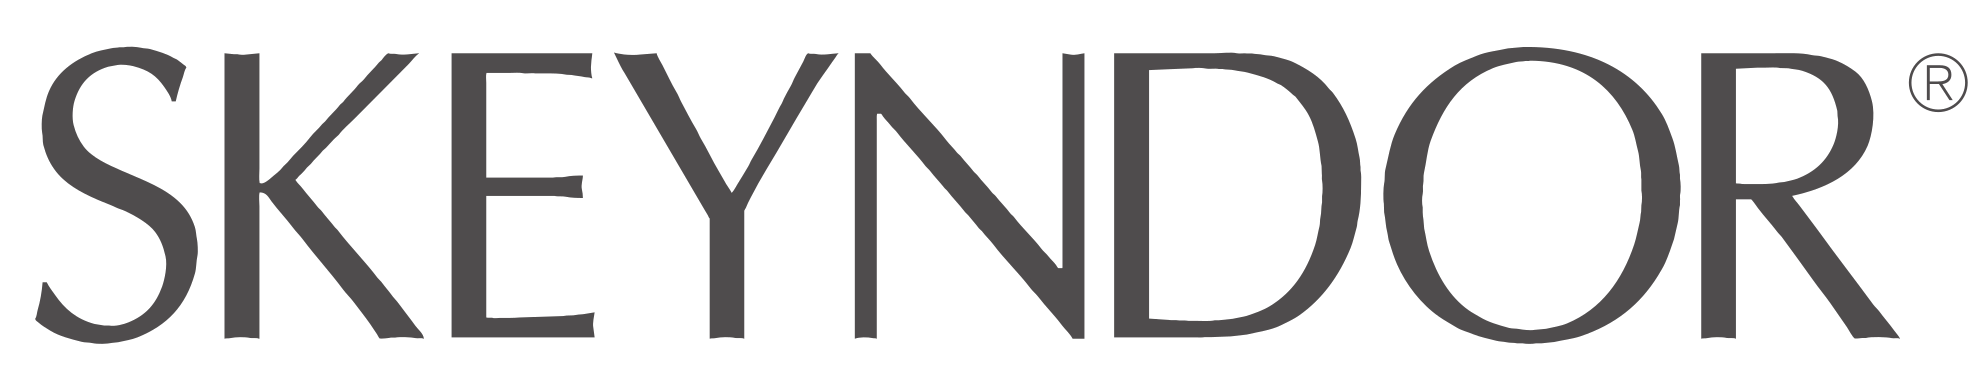 Skeyndor_logo